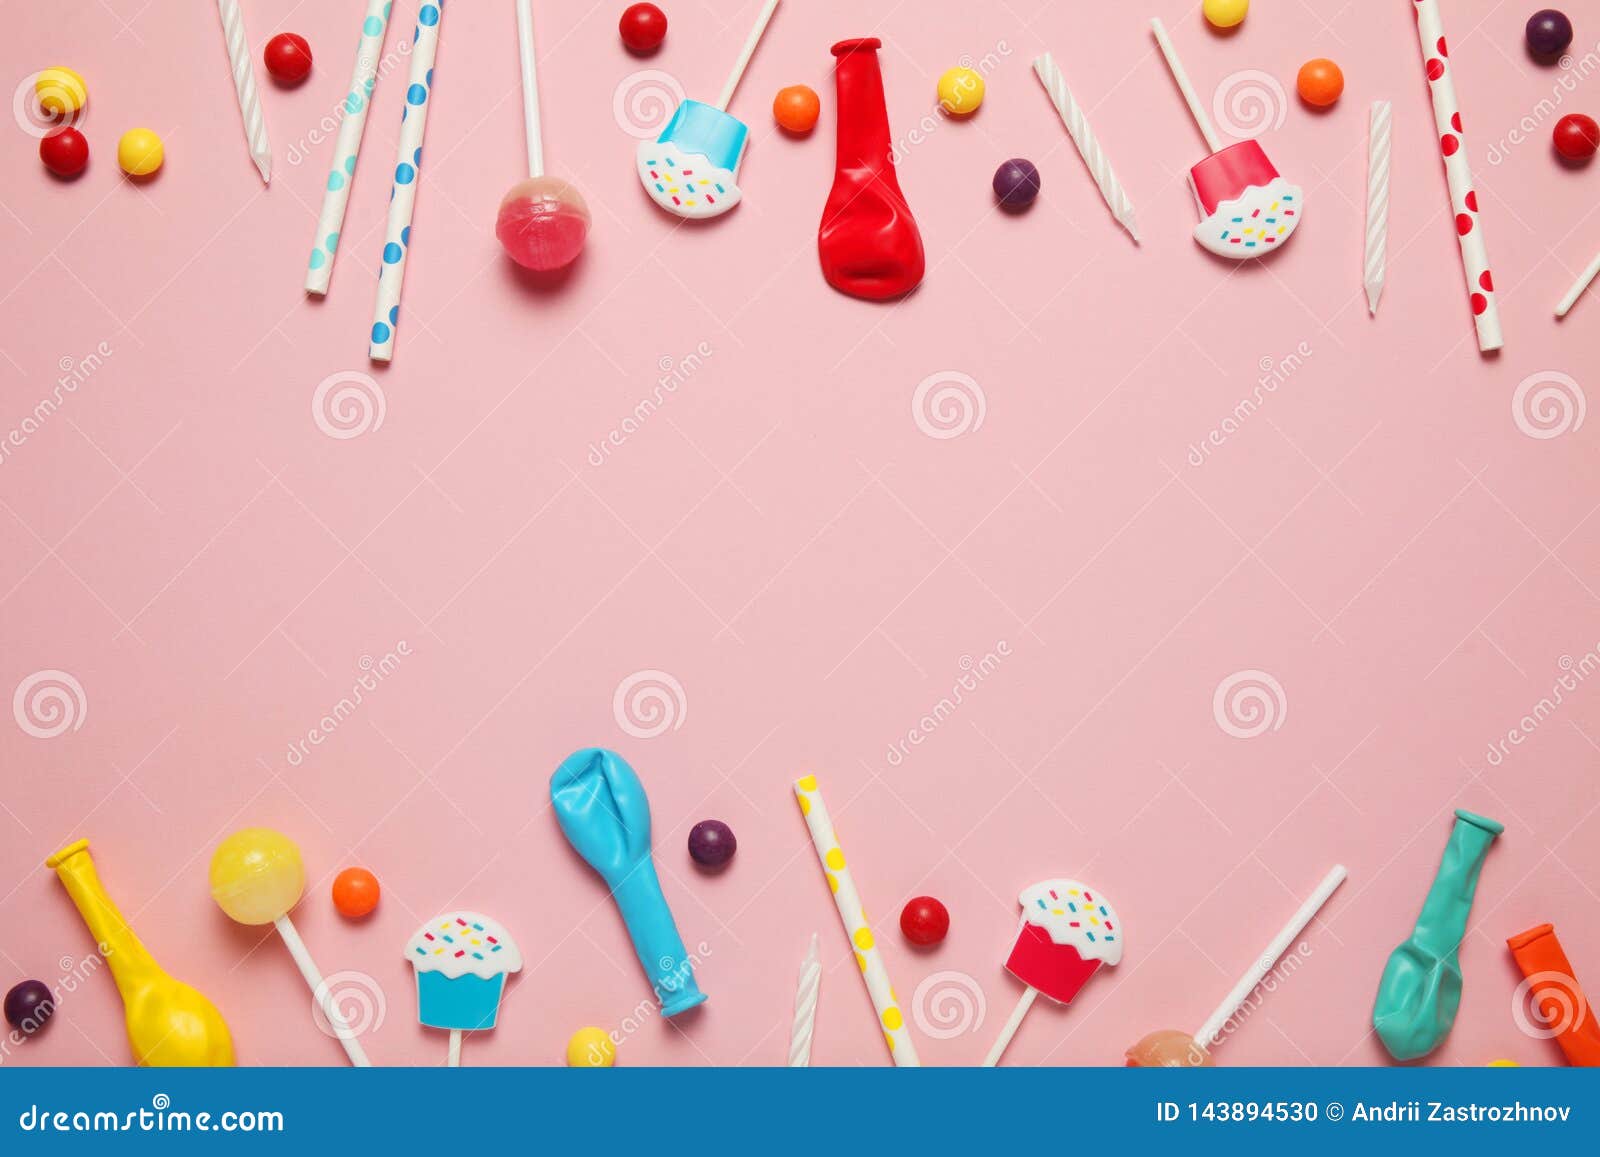 Pin en Candy Party Ideas